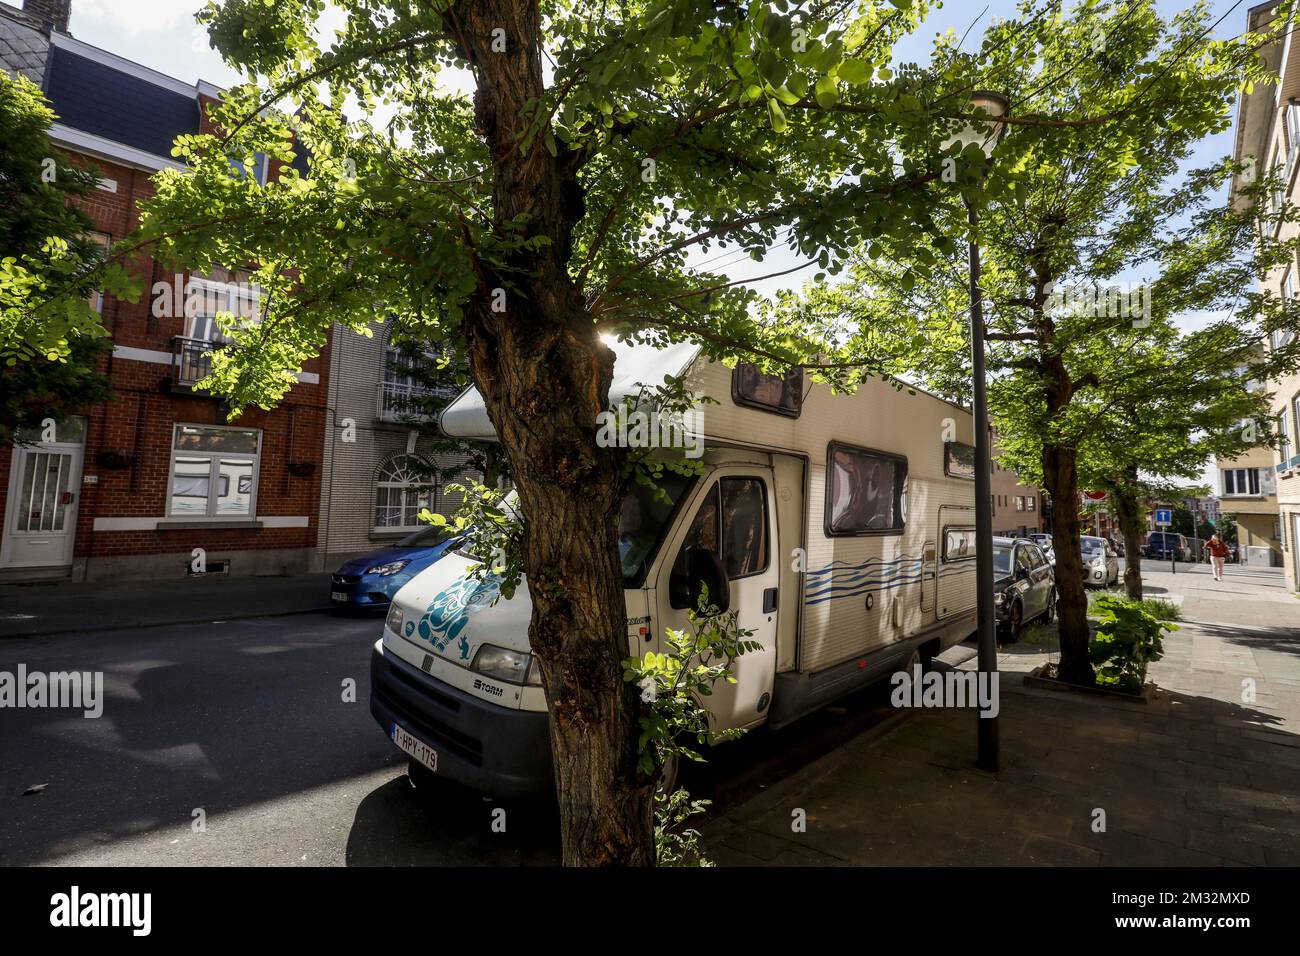 Abbildung zeigt einen Wohnwagen, der in den Straßen von Anderlecht, Brüssel, geparkt ist, da noch nicht entschieden wurde, wann die Menschen innerhalb des Landes reisen können, Mittwoch, den 13. Mai 2020. Belgien befindet sich in der neunten Woche seiner Eindämmung in der anhaltenden Coronavirus-Krise und in der ersten Woche der Dekonfinationsphase 1B. BELGA FOTO THIERRY ROGE Stockfoto